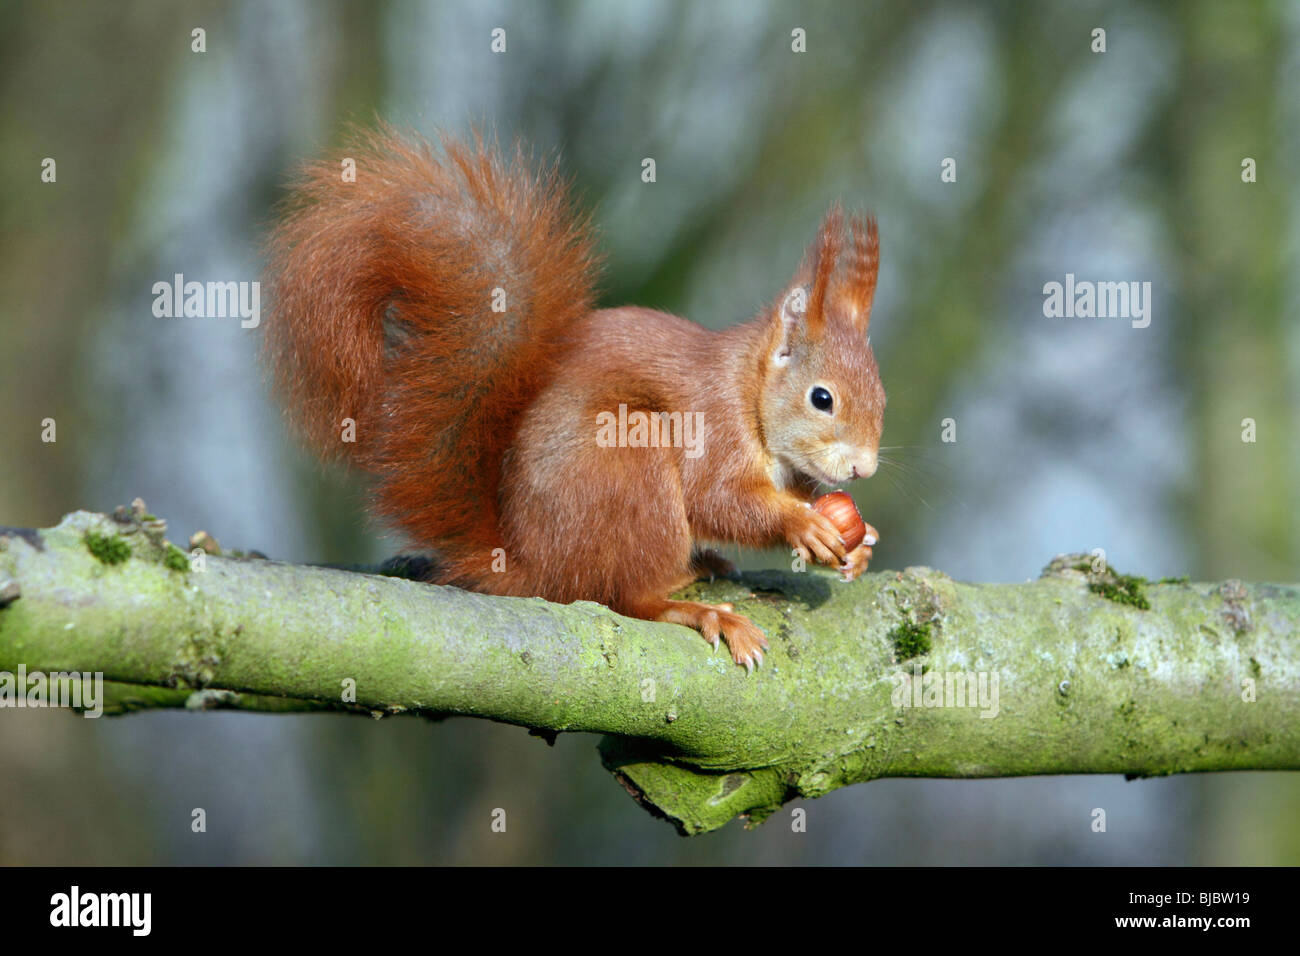 L'Écureuil roux (Sciurus vulgaris) assis sur la branche, noisette, manger Banque D'Images